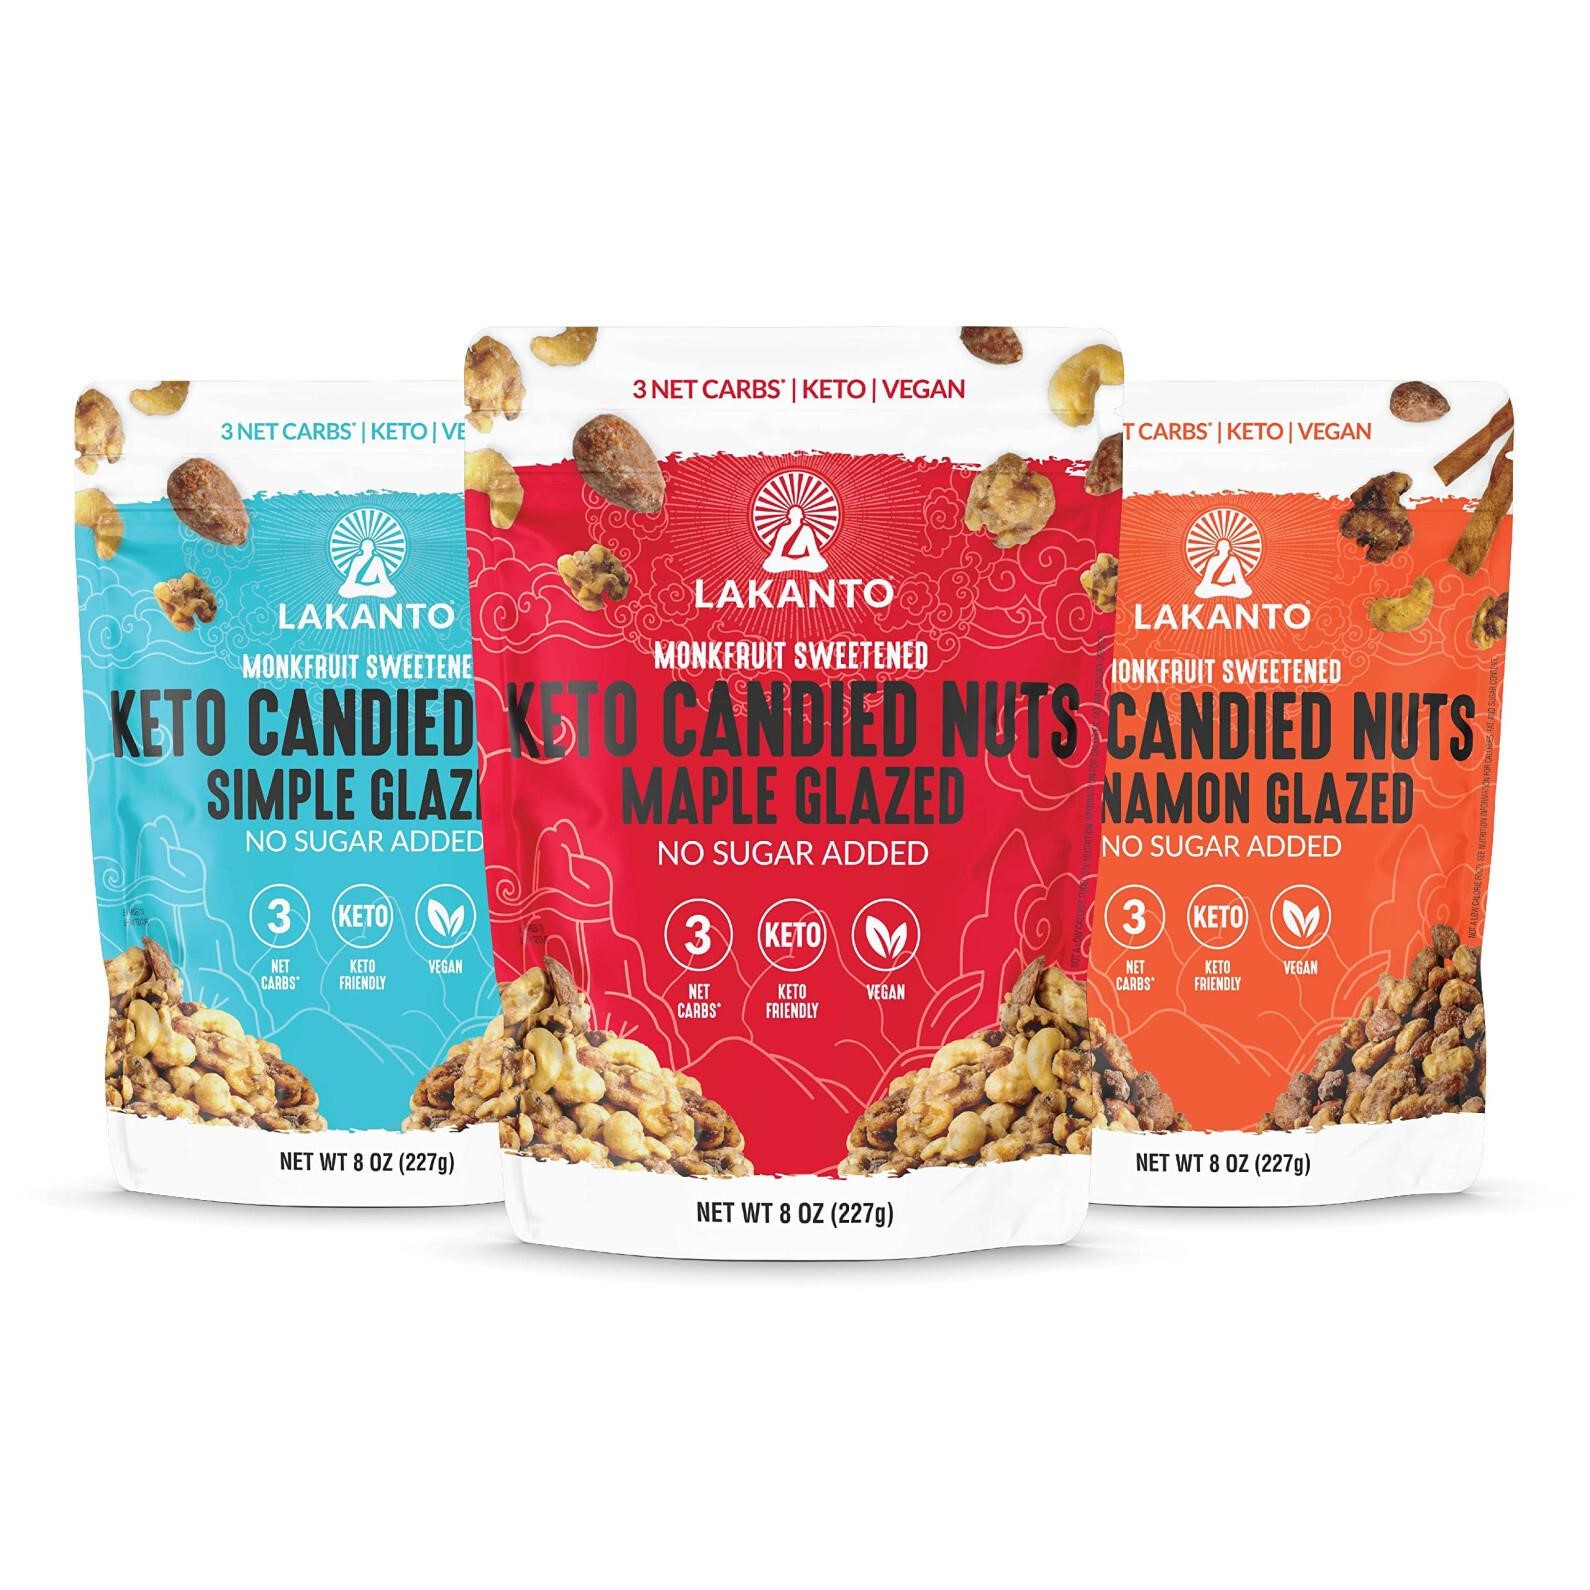 Lakanto Keto Mixed Candied Nuts Variety Pack - No